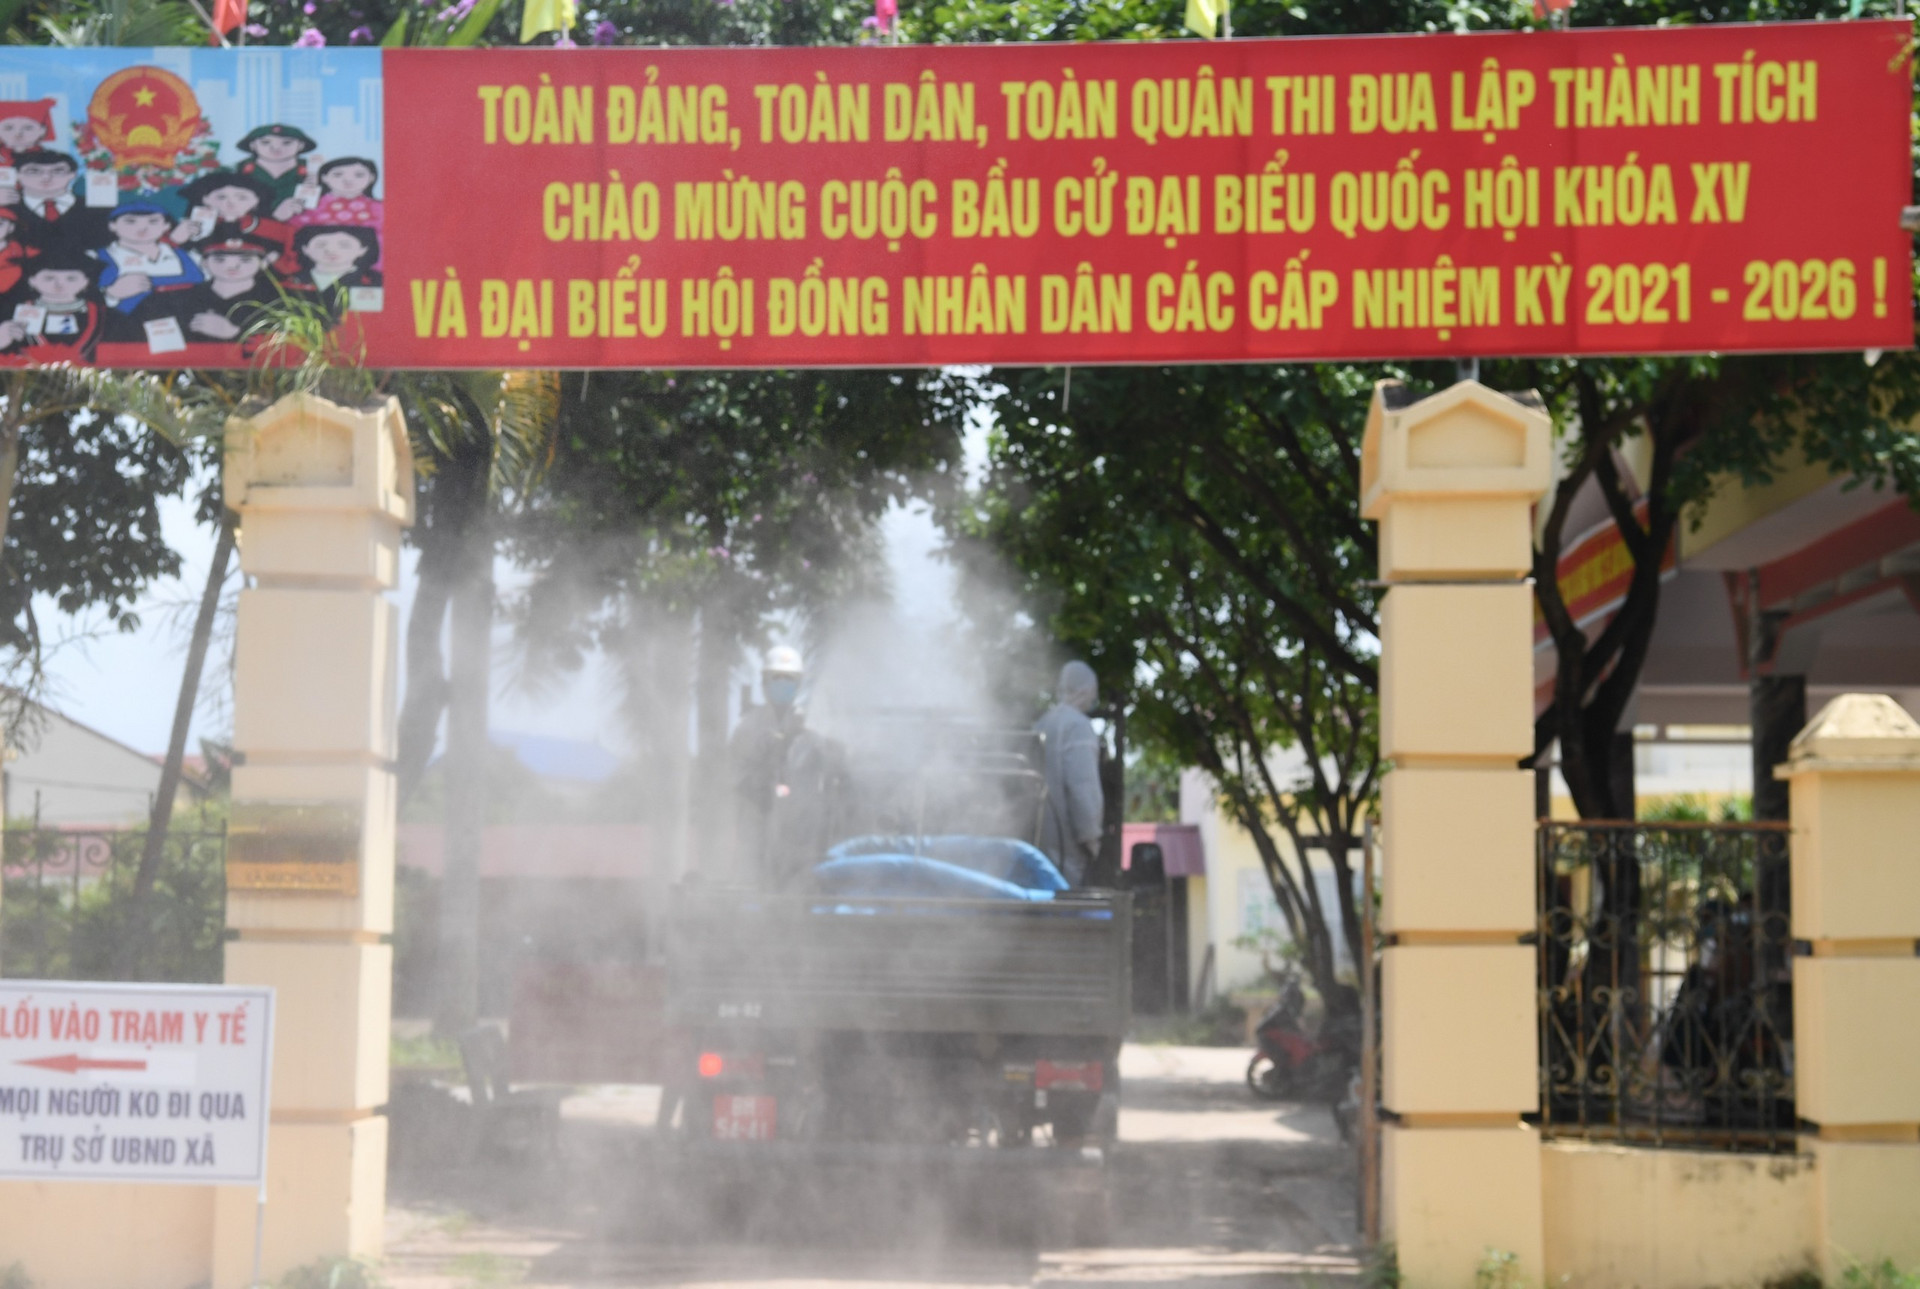 Ảnh: Dàn xe đặc chủng của quân đội khử khuẩn 4 huyện ở Bắc Giang - 1